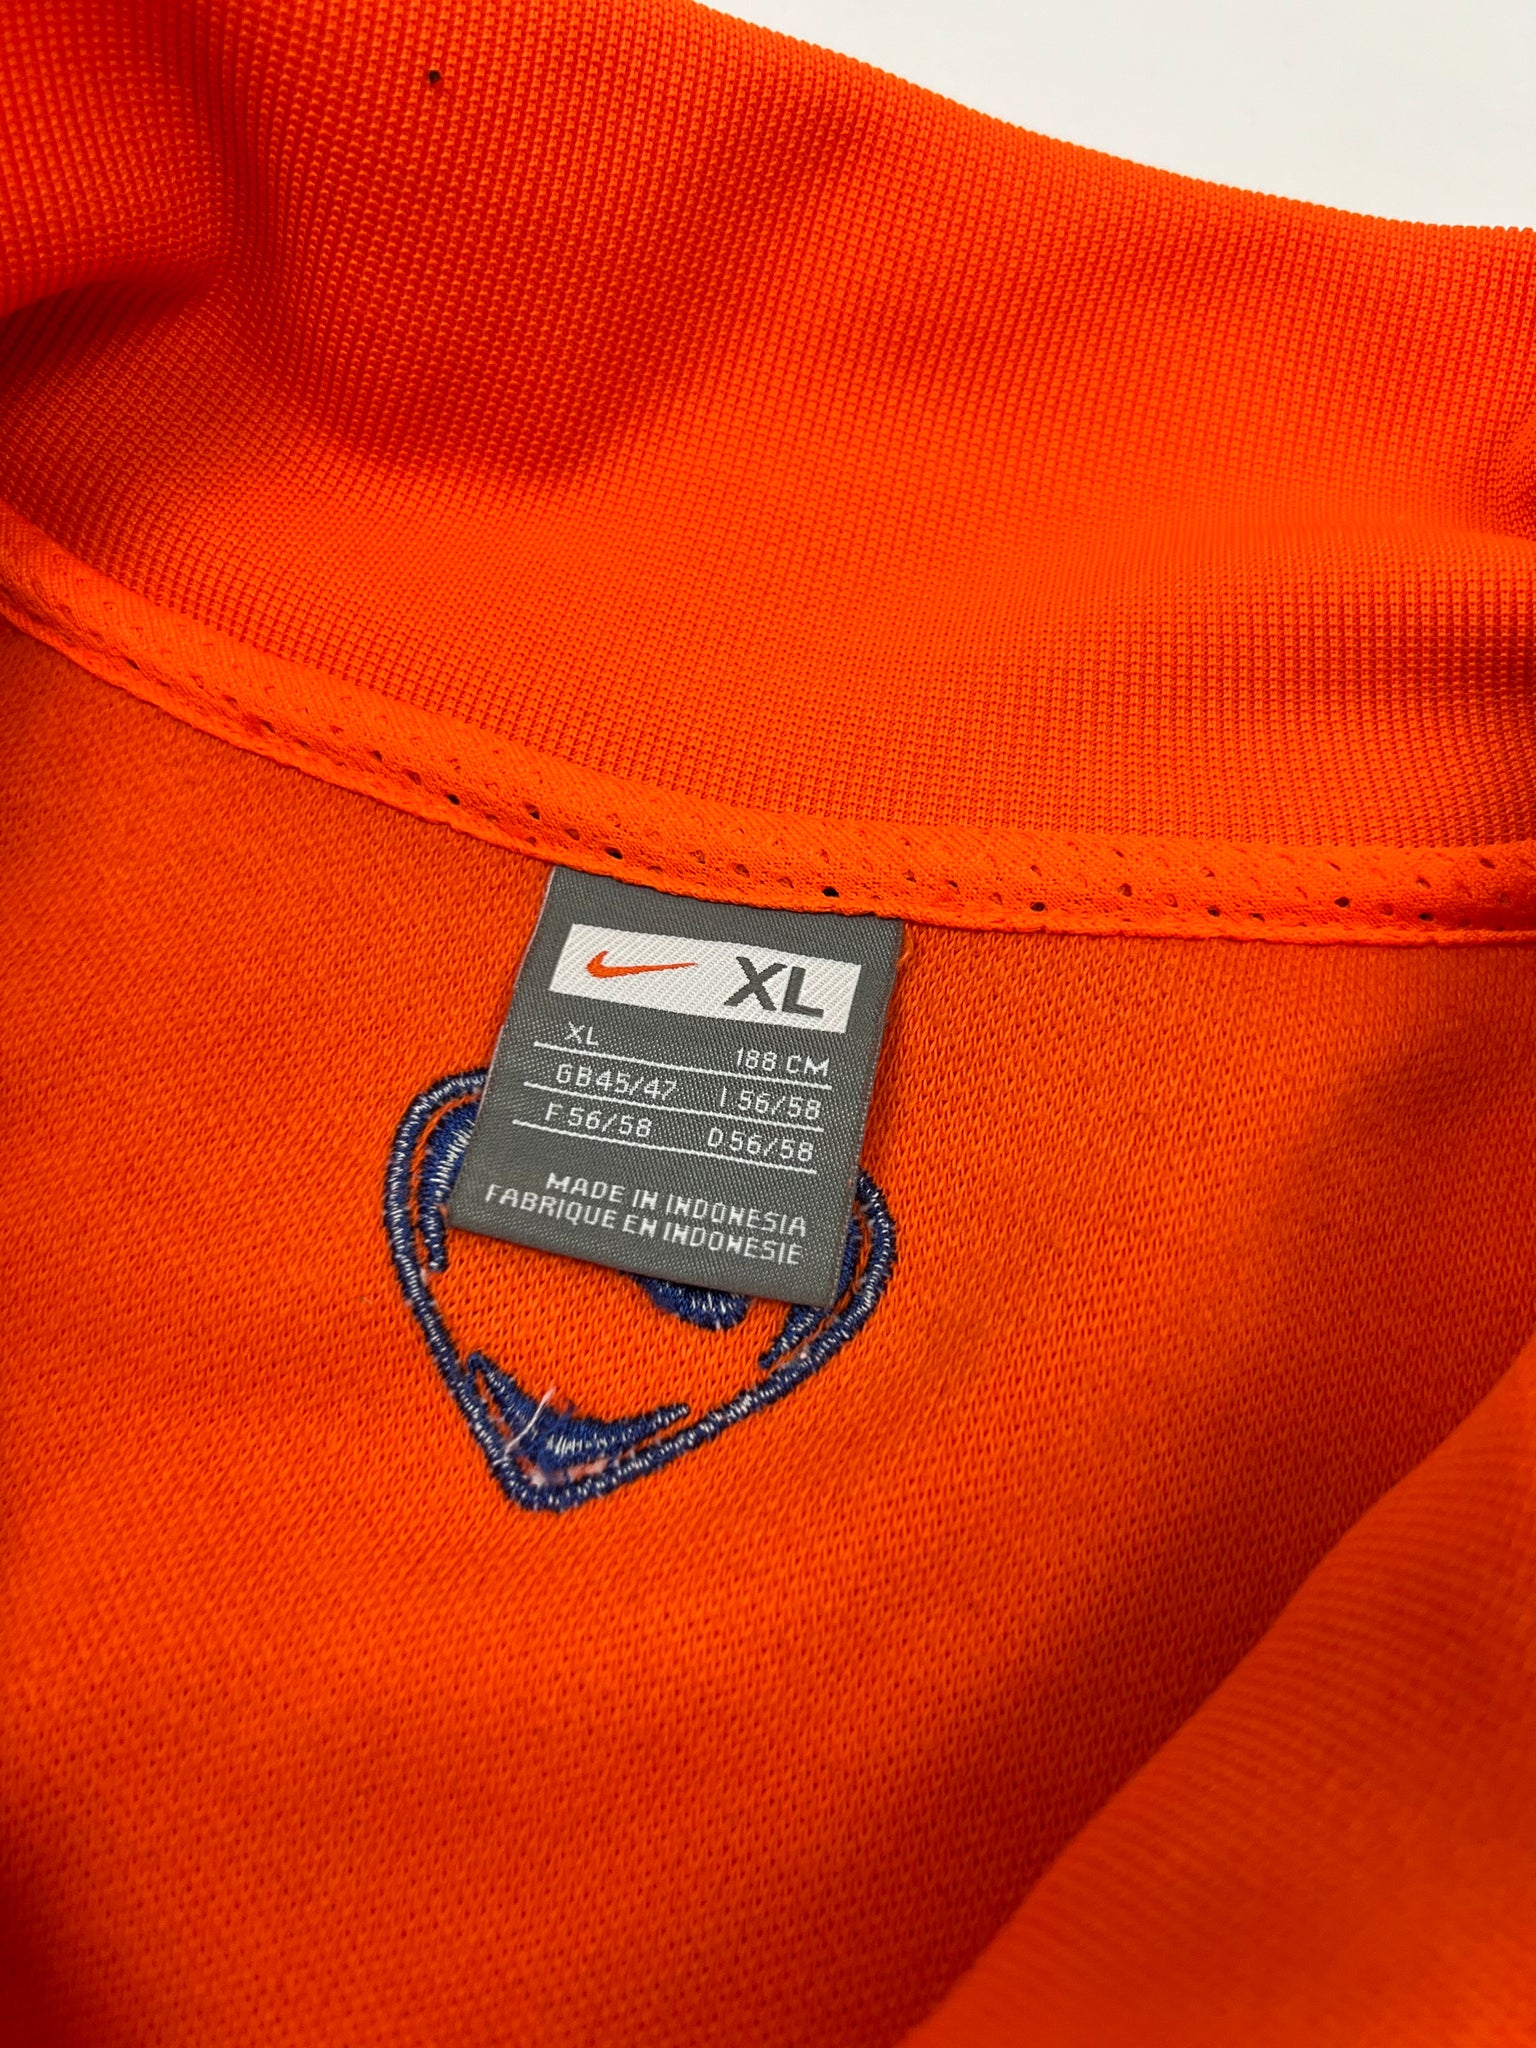 Nike Netherlands Track Jacket (XL)